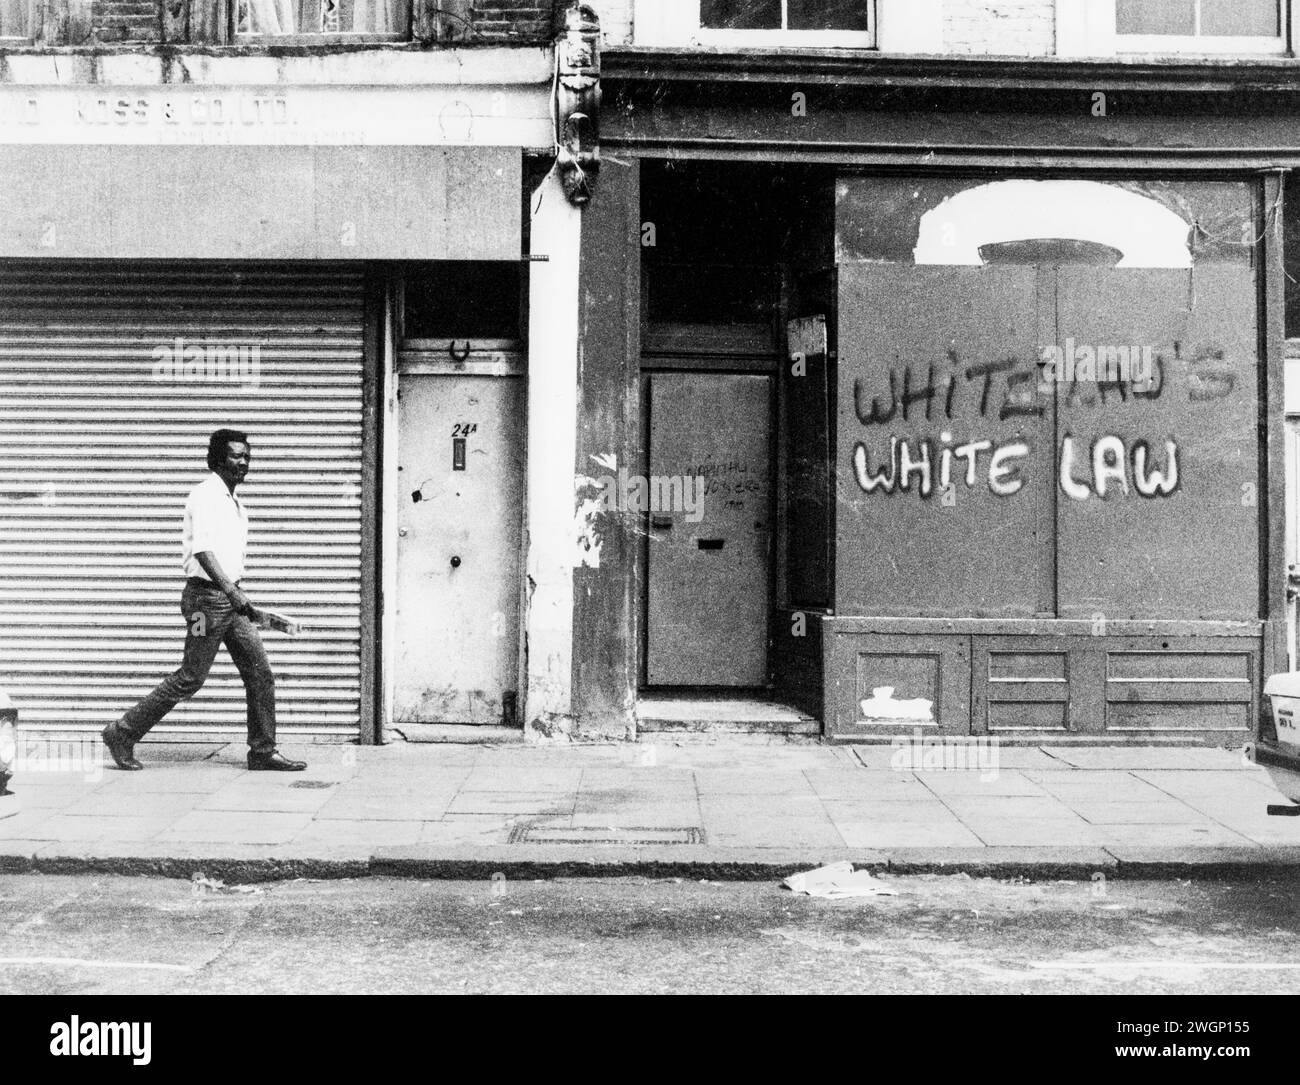 Graffiti sul fronte di un negozio, 22 All Saints Road vicino al Mangrove Restaurant, Notting Hill, Londra, 1971. Il ristorante è stato aperto nel 1968 dall'attivista per i diritti civili Frank Crichlow ed è stato un luogo di incontro per la comunità nera locale. Spesso razziata dalla polizia che ha portato a proteste e a un famoso processo nel 1971. Il processo ai Mangrove Nine ha attirato l'attenzione pubblica sul razzismo della polizia e ha trasformato la lotta contro di esso in una causa célèbre.i graffiti "Whitelaws - White Law" alludono al Segretario degli interni conservatore William Whitelaw e alla posizione del governo conservatore alla polizia e al razzismo. Foto Stock